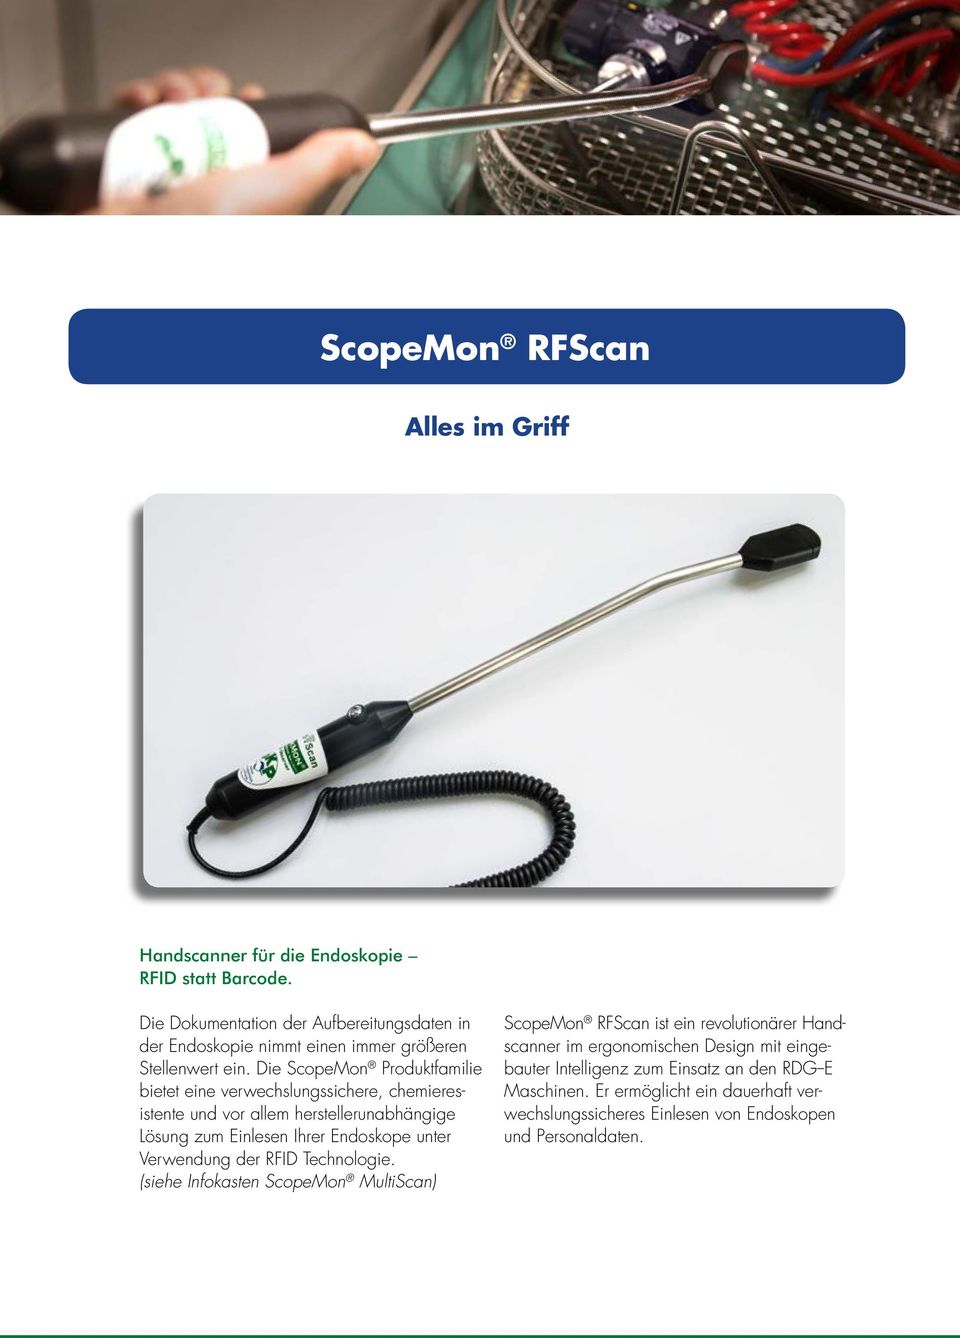 Die ScopeMon Produktfamilie bietet eine verwechslungssichere, chemieresistente und vor allem herstellerunabhängige Lösung zum Einlesen Ihrer Endoskope unter